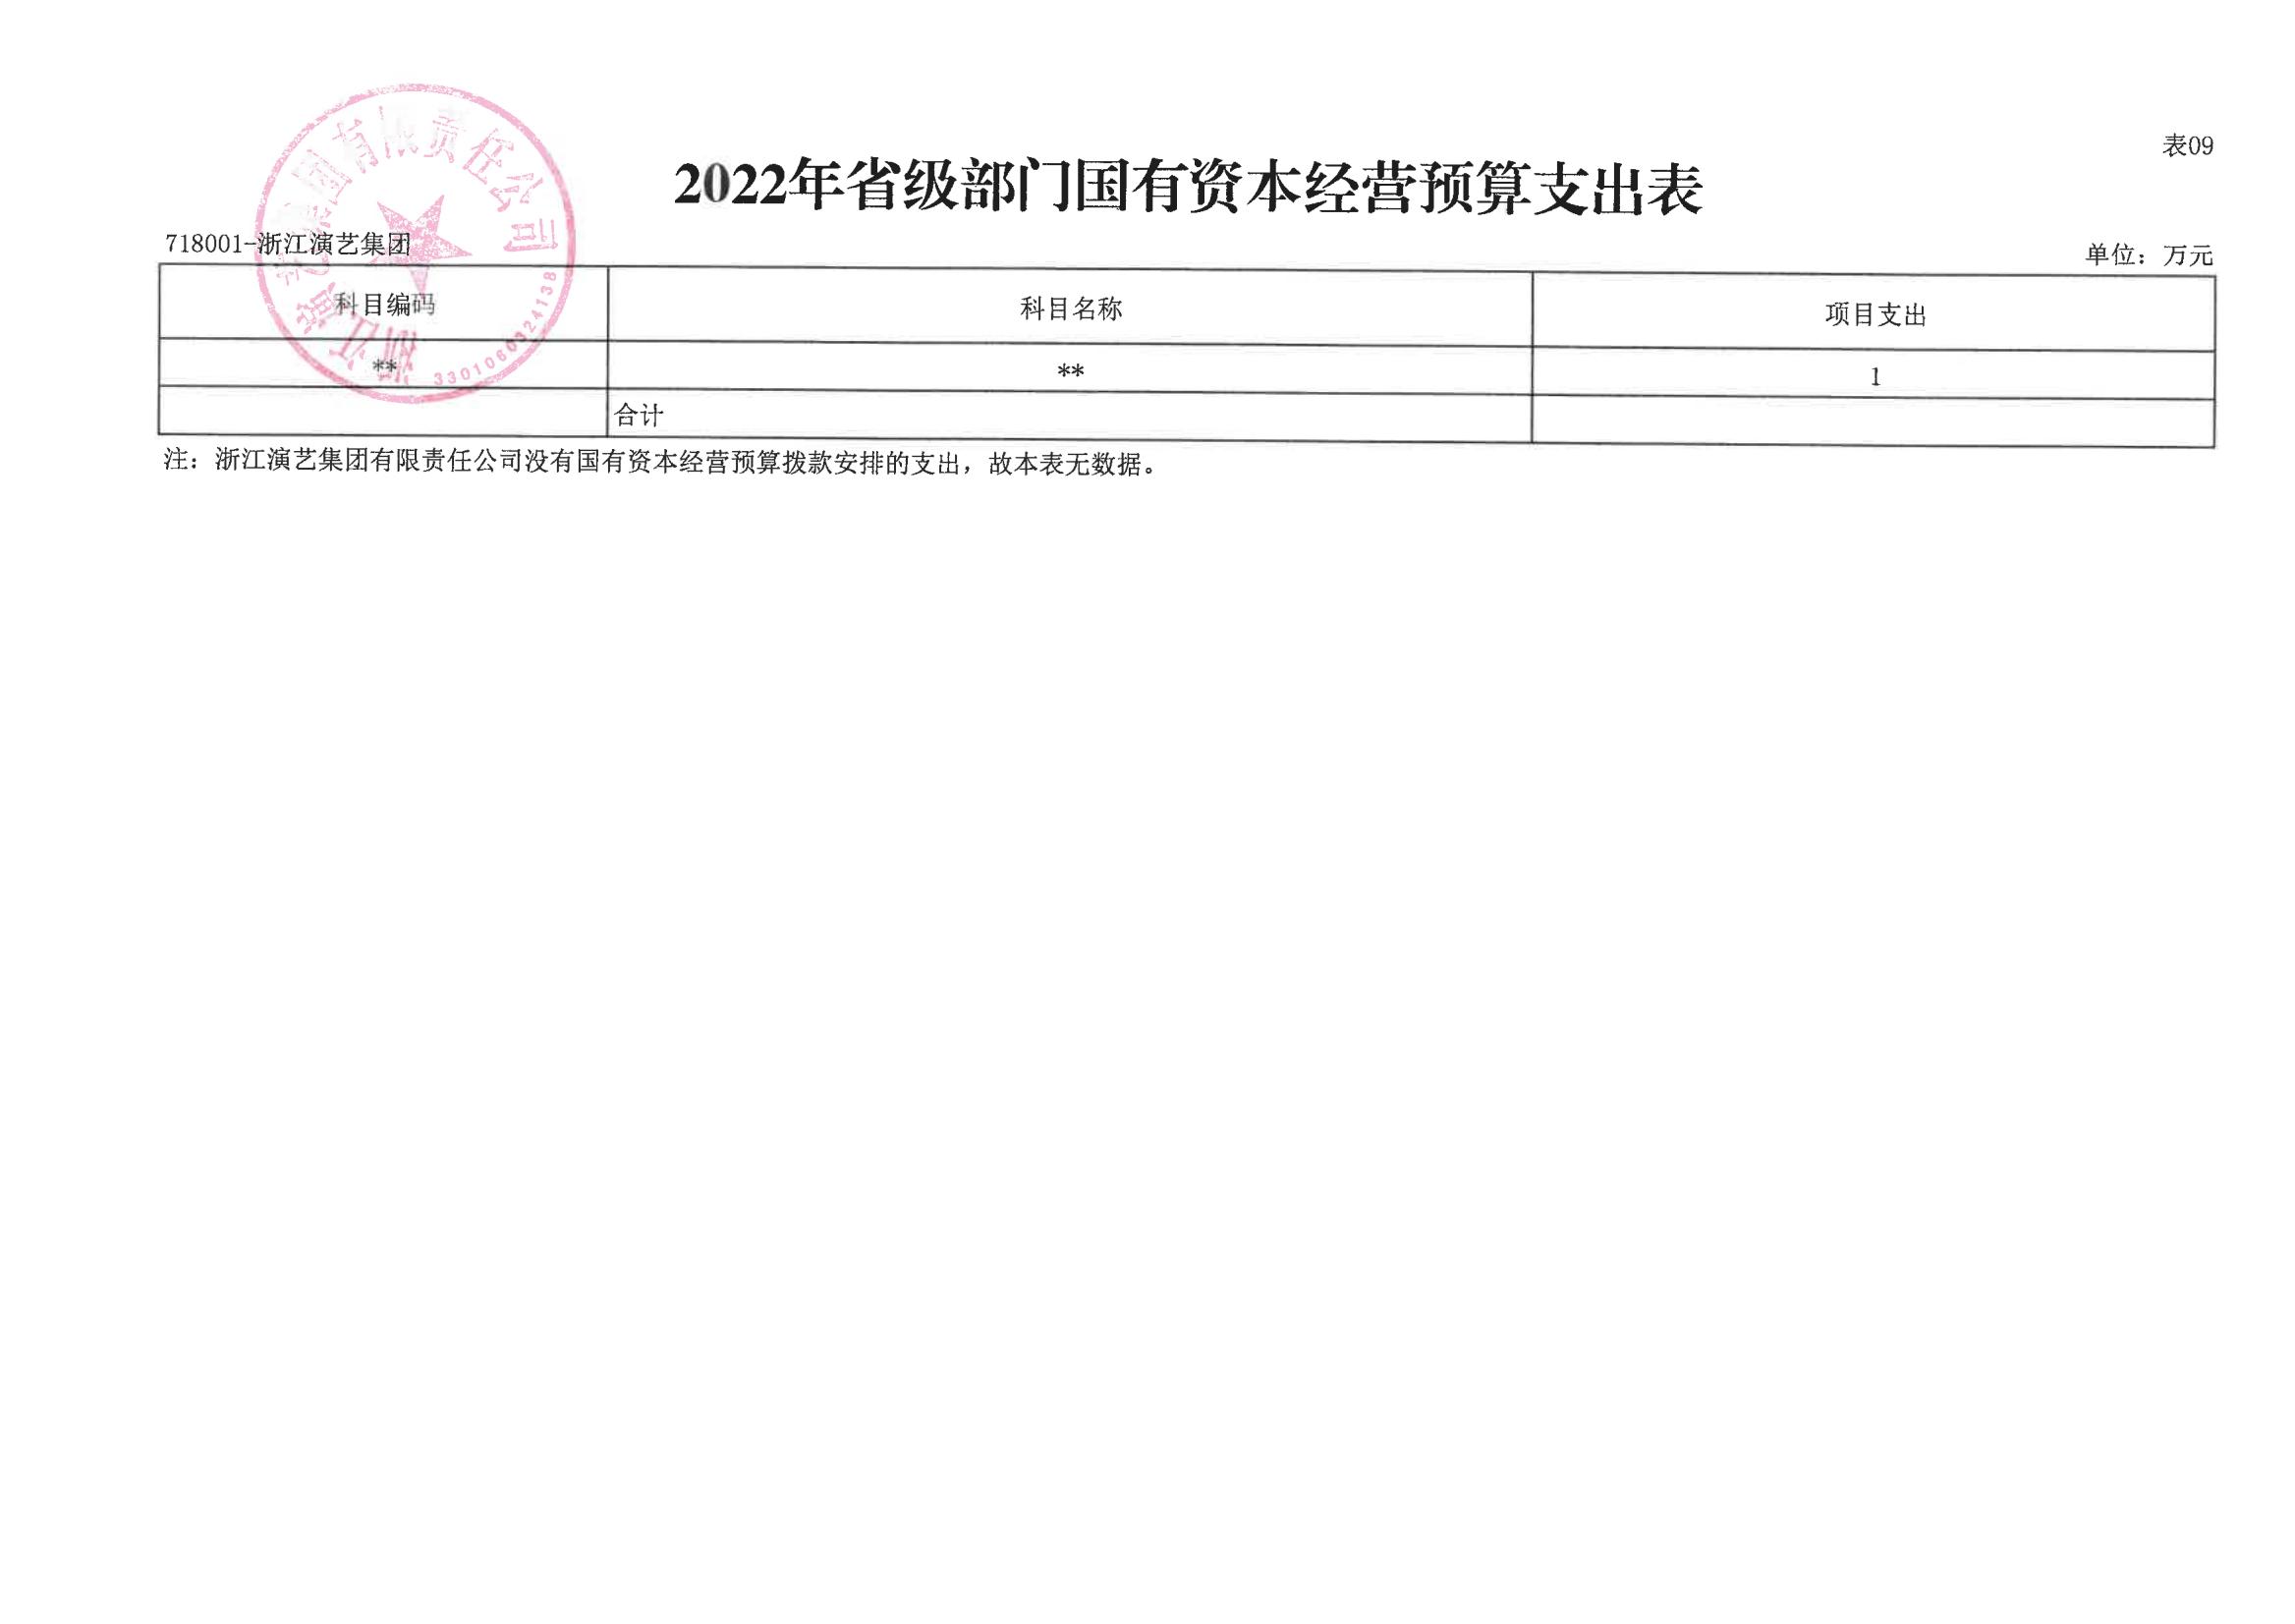 浙演-2022年部门预算公开_19.jpg